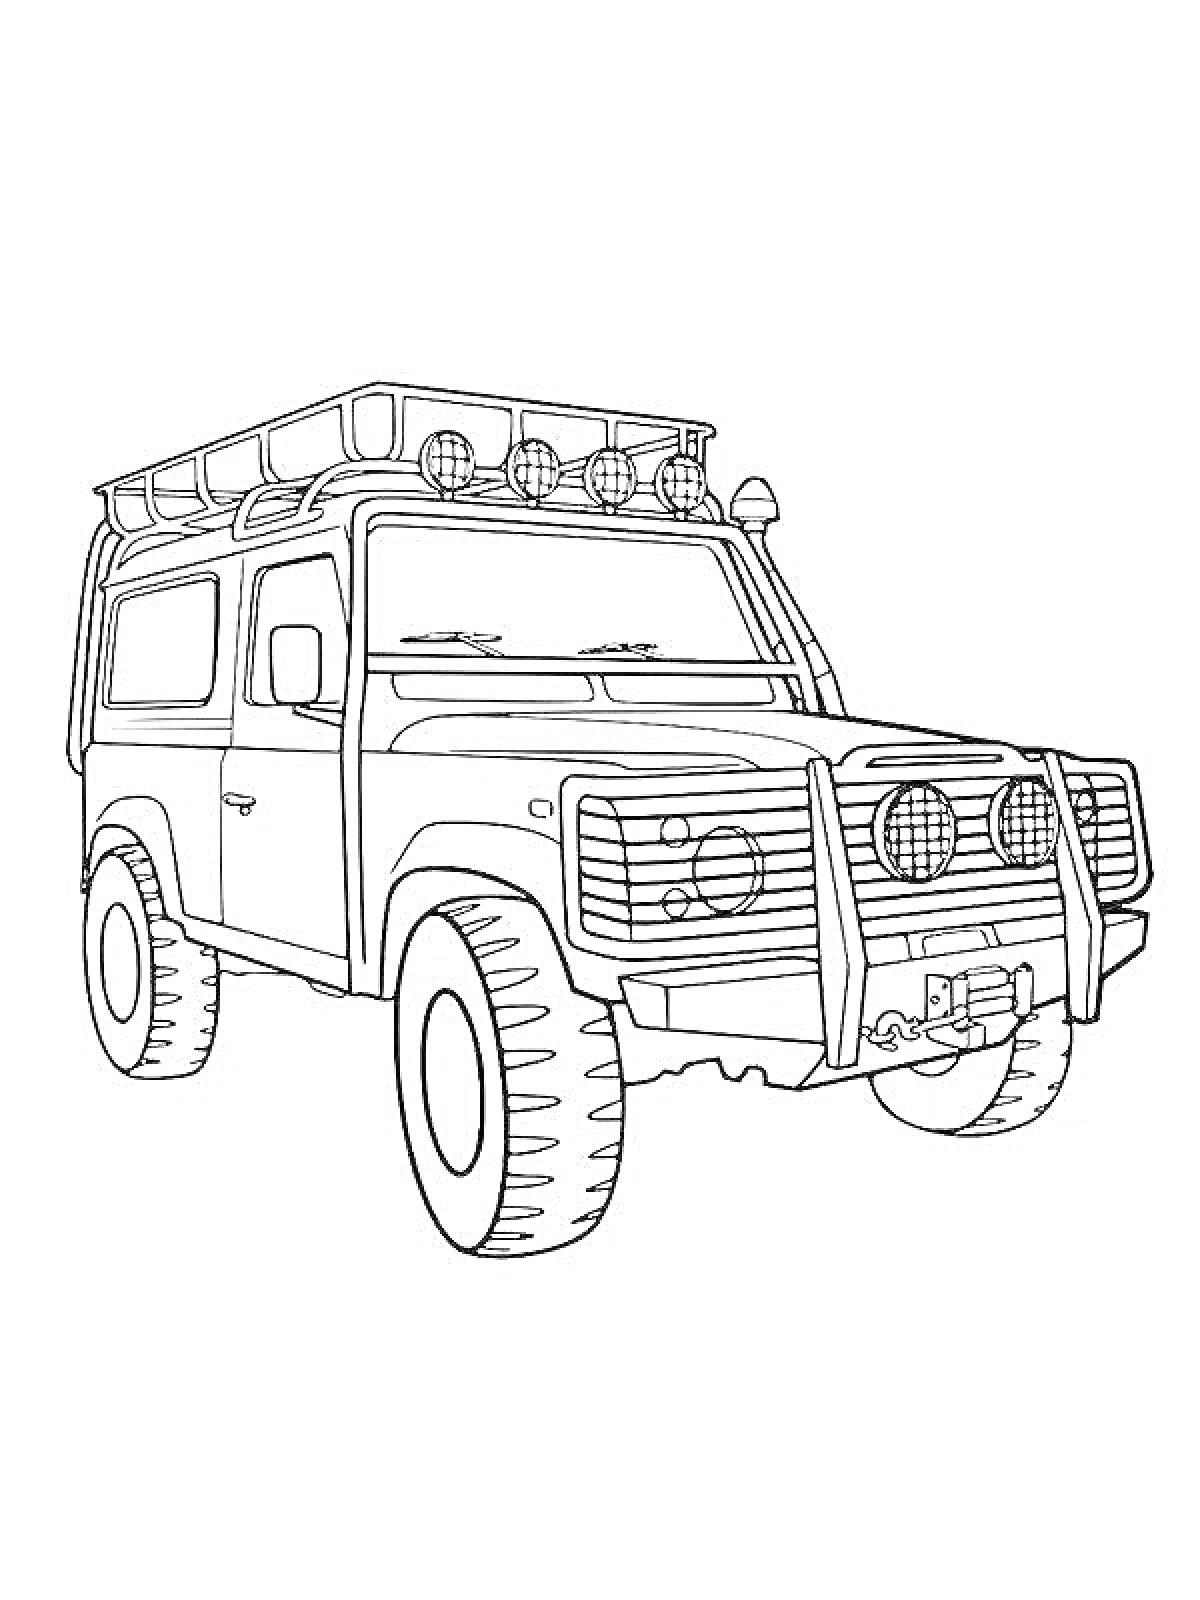 Раскраска Военный джип с фарами на крыше, решеткой радиатора и запасным колесом на задней двери